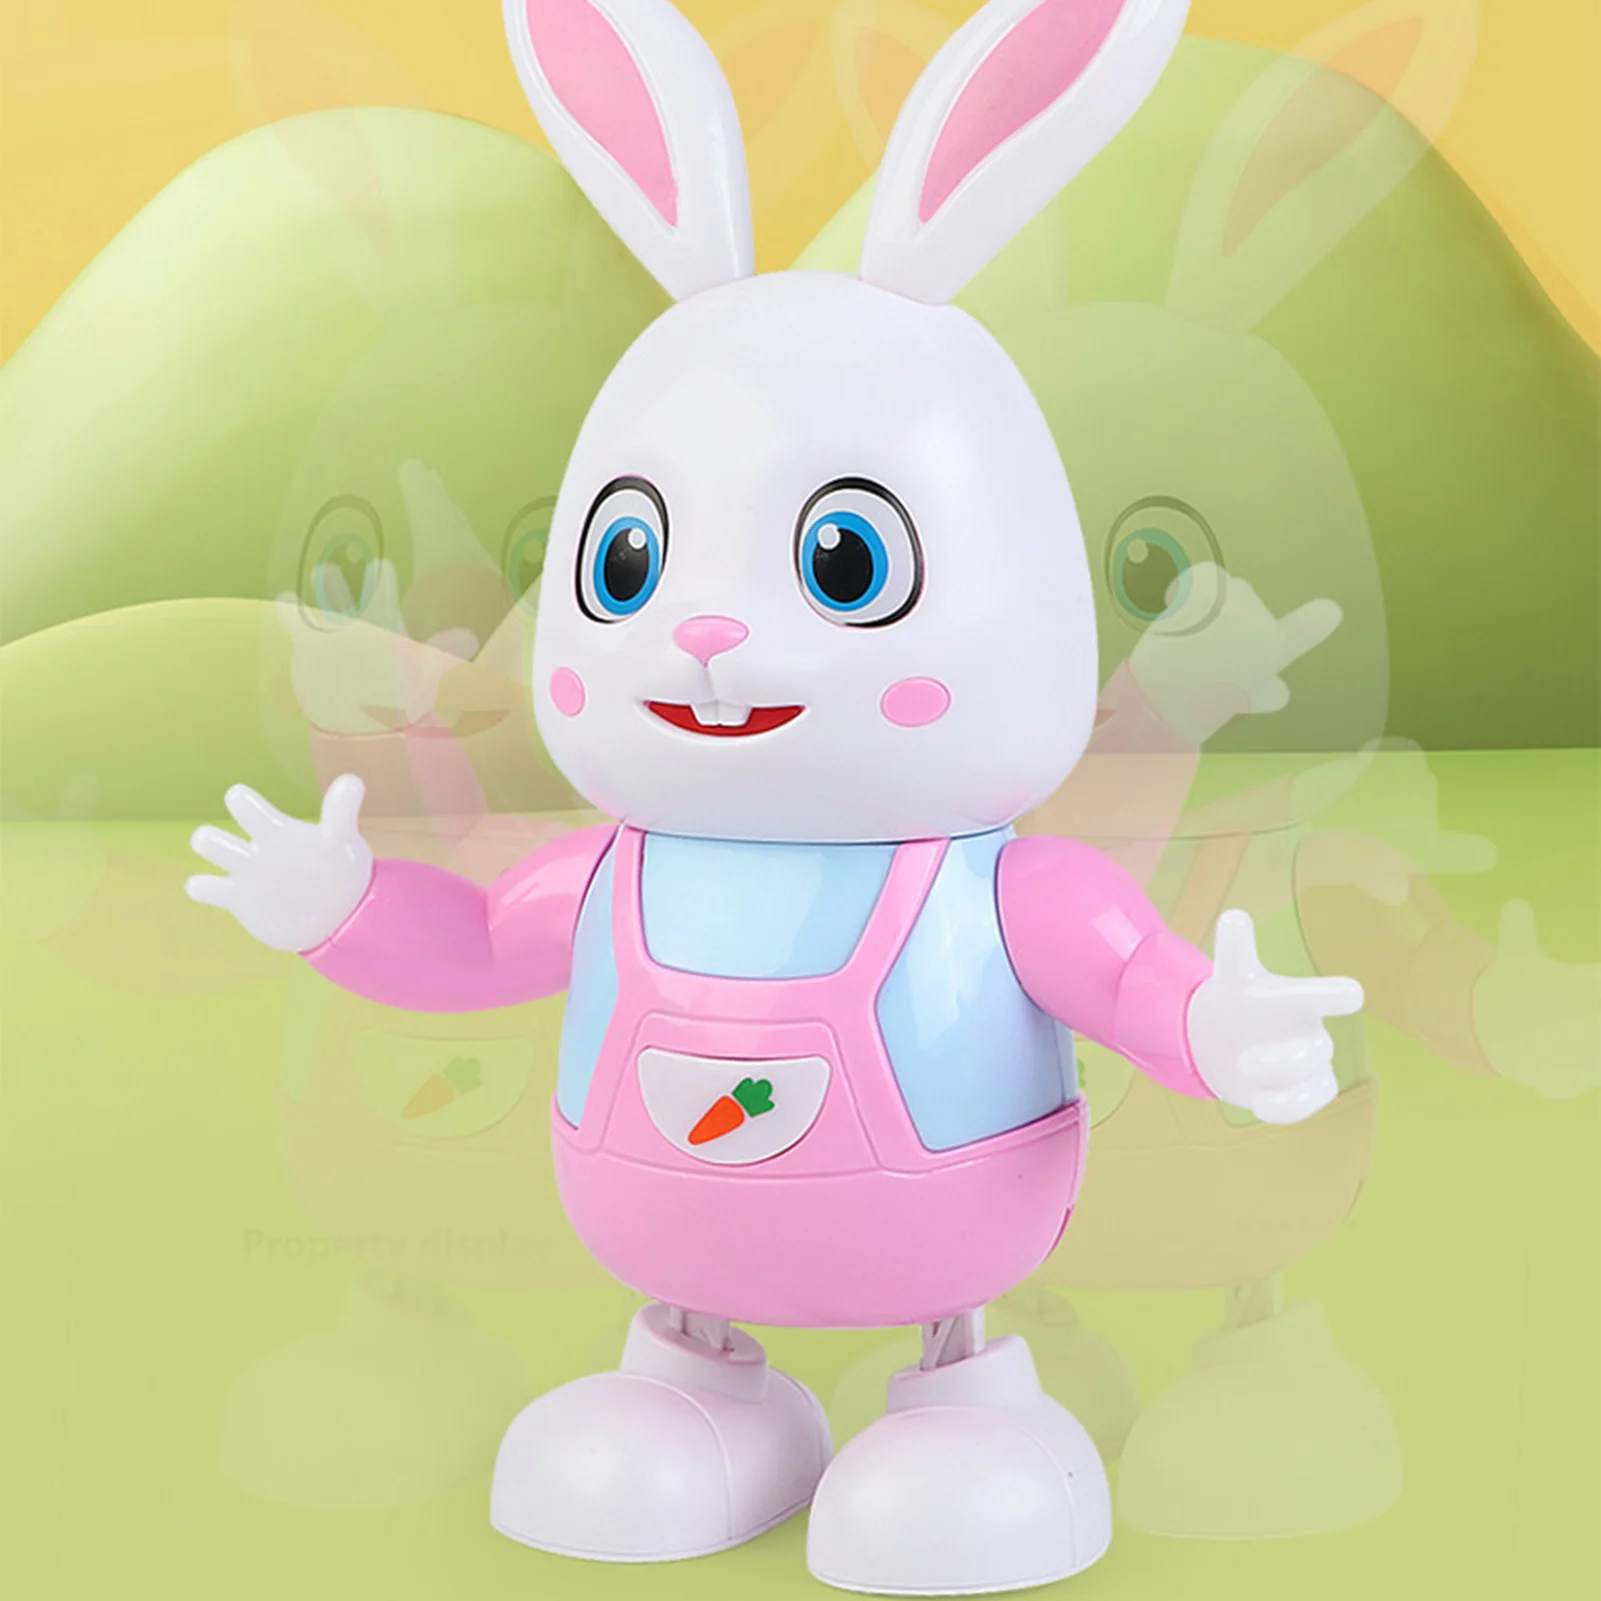 Conejo de baile Musical eléctrico para niños, juguete interactivo de iluminación, herramienta educativa temprana, regalo de cumpleaños de Pascua y Navidad